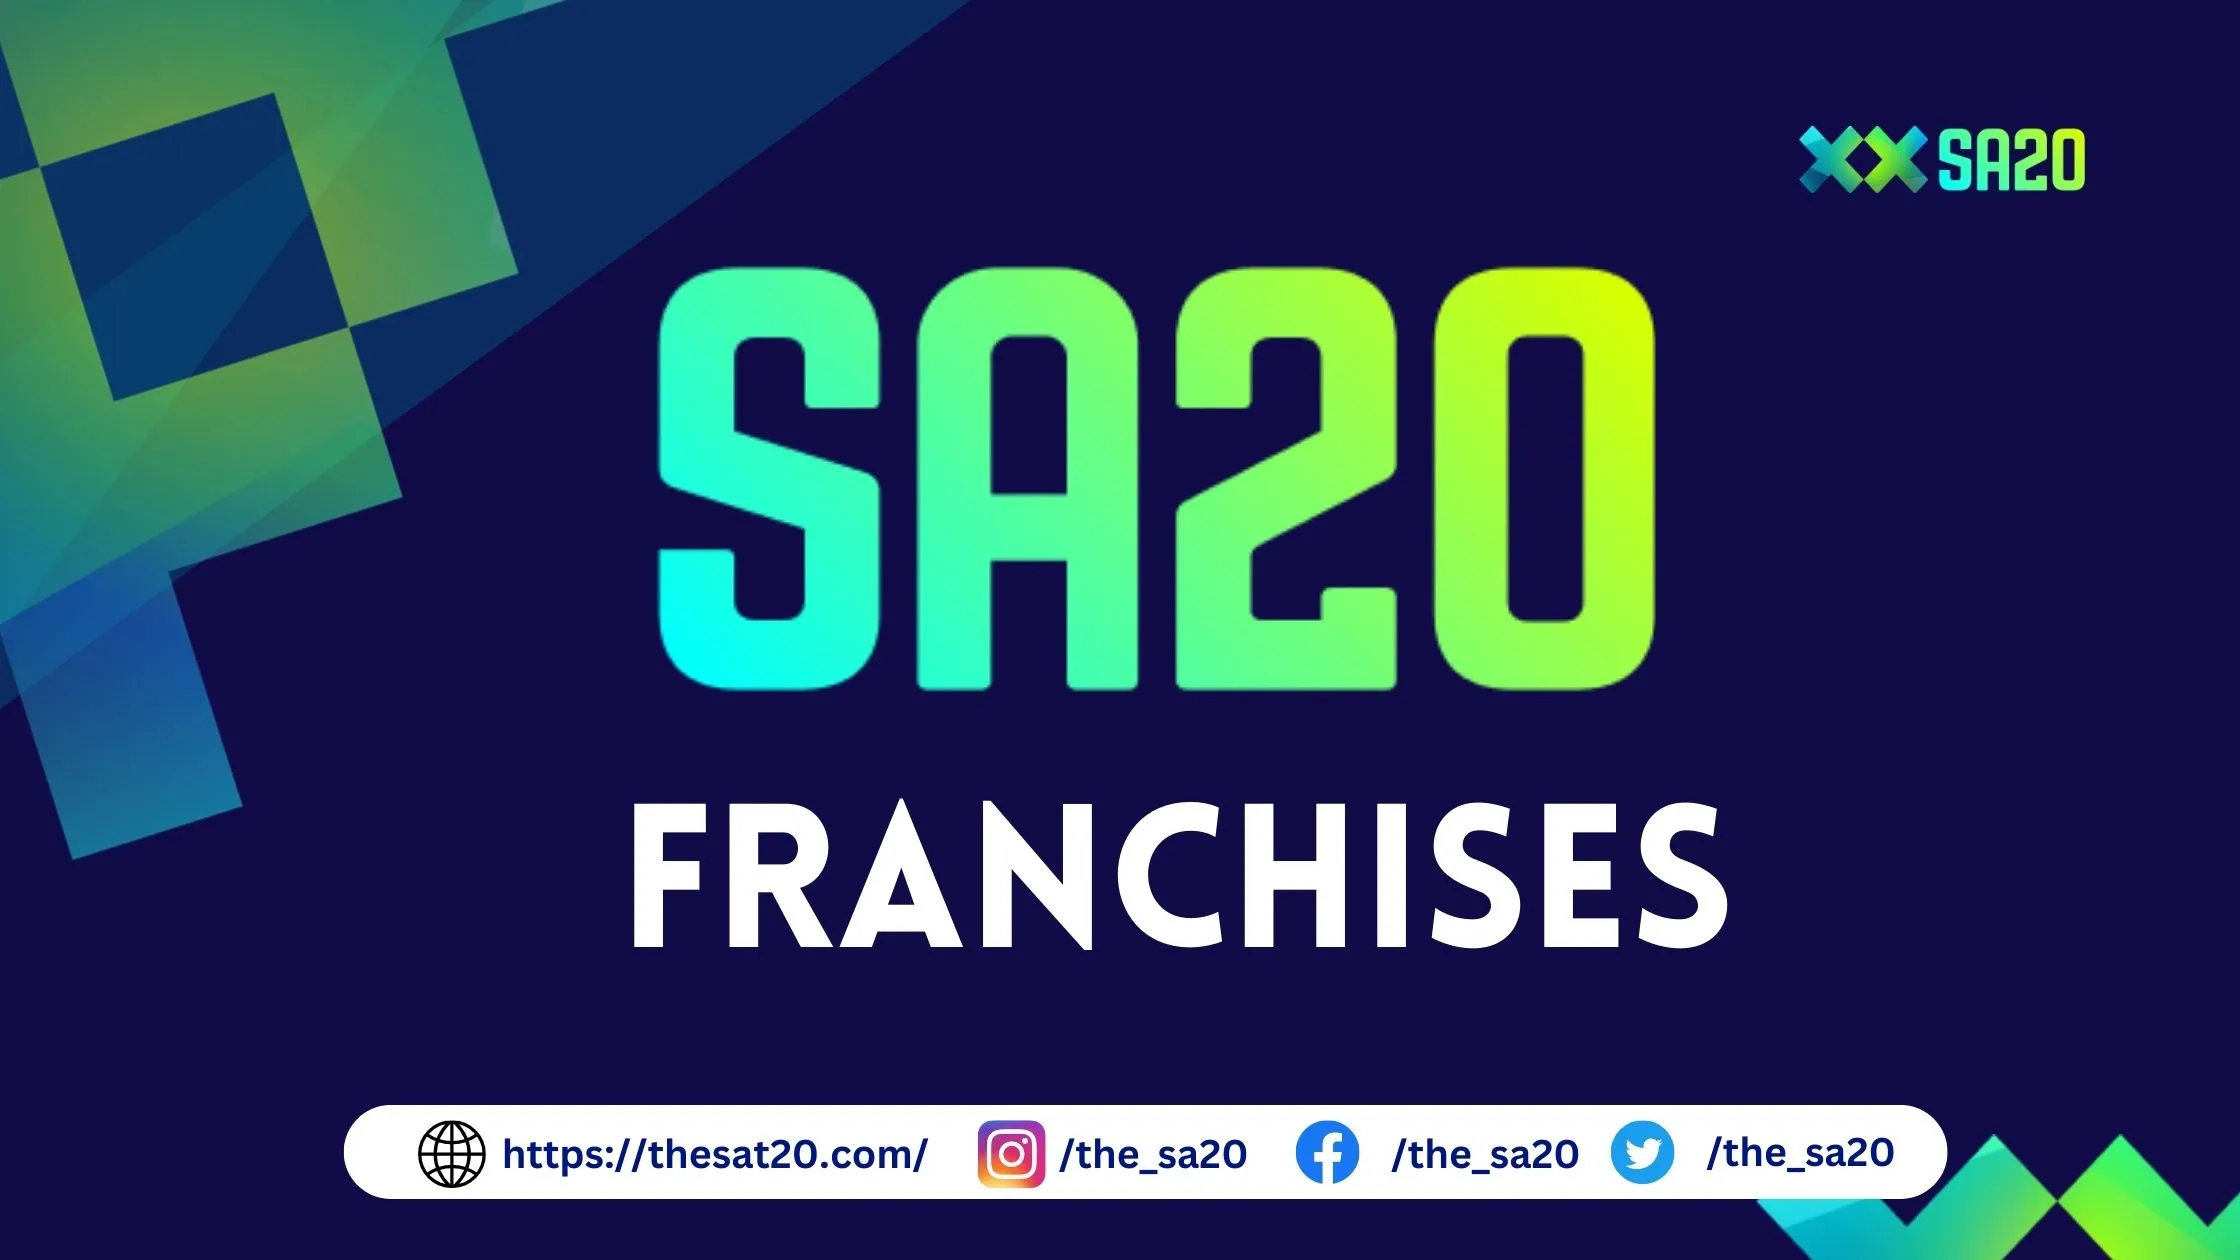 sa20 franchises